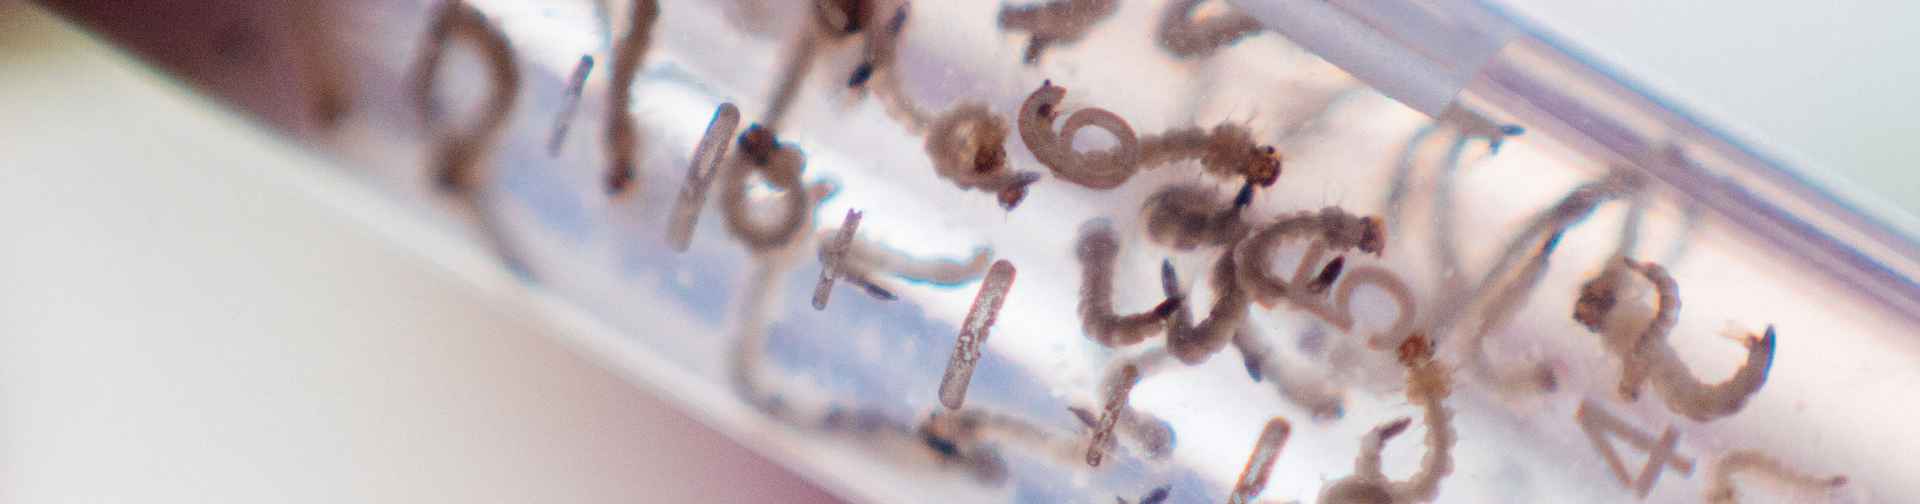 Larvas de Aedes aegypti em Tubo Falcon (é uma das fases de desenvolvimento do vetor).